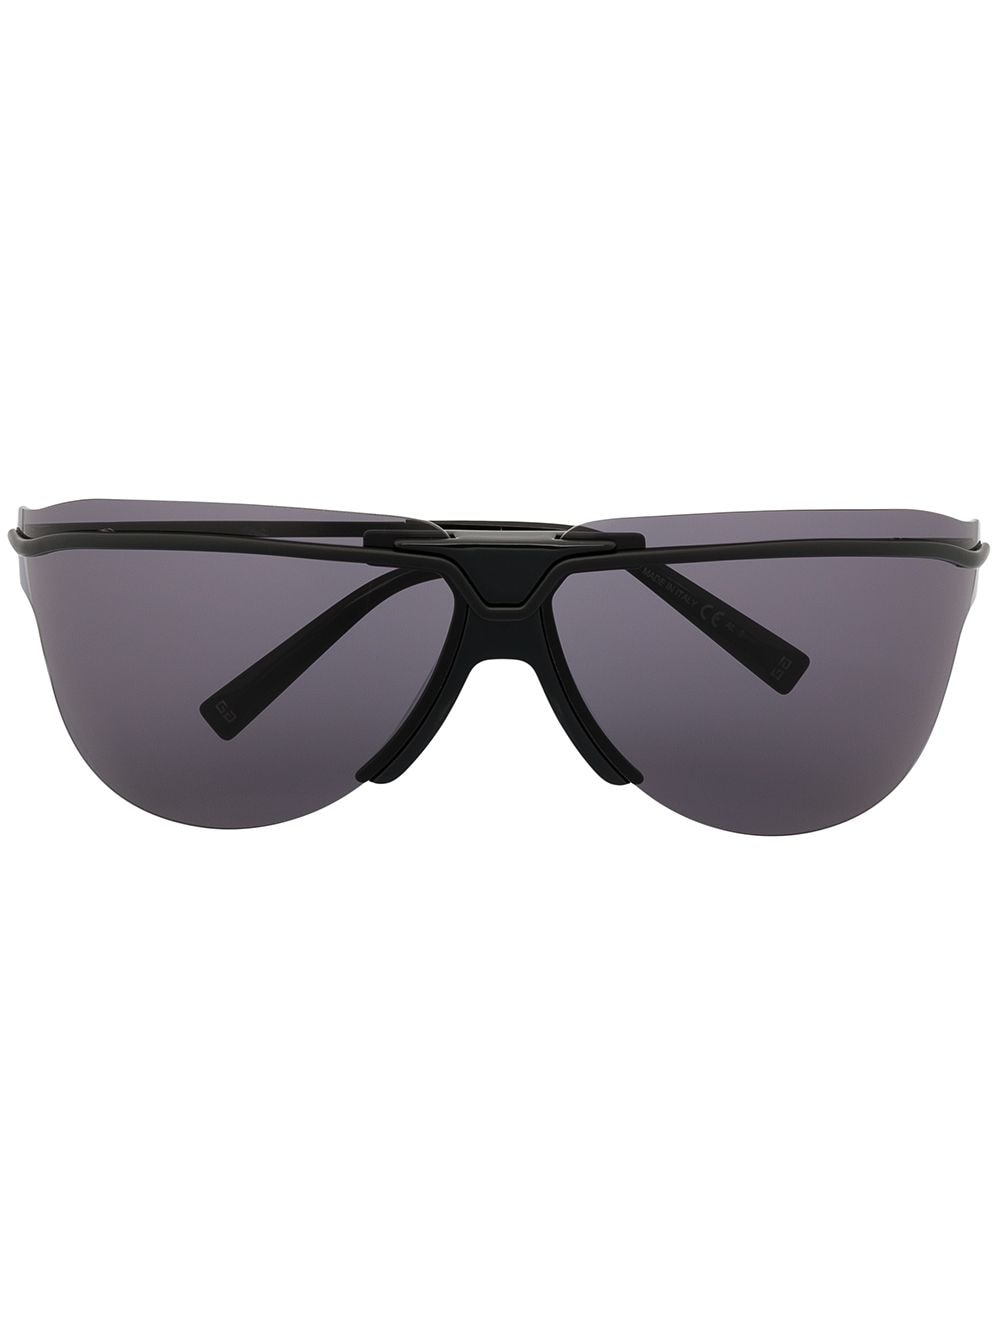 фото Givenchy eyewear солнцезащитные очки в массивной оправе с затемненными линзами